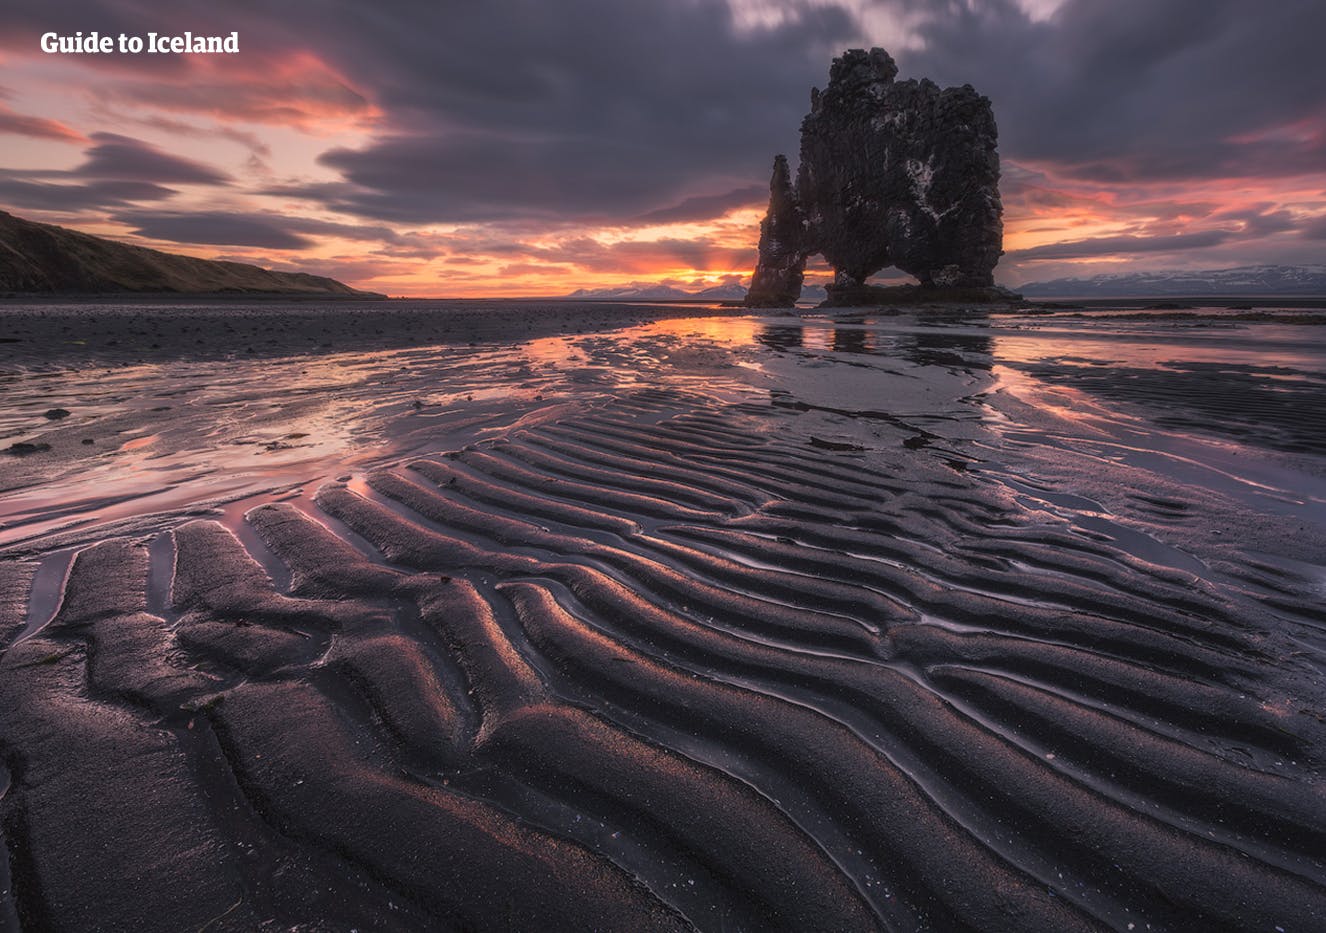 La penisola di Vatnsnes, nell'Islanda settentrionale, ospita l'imponente monolite Hvítserkur.